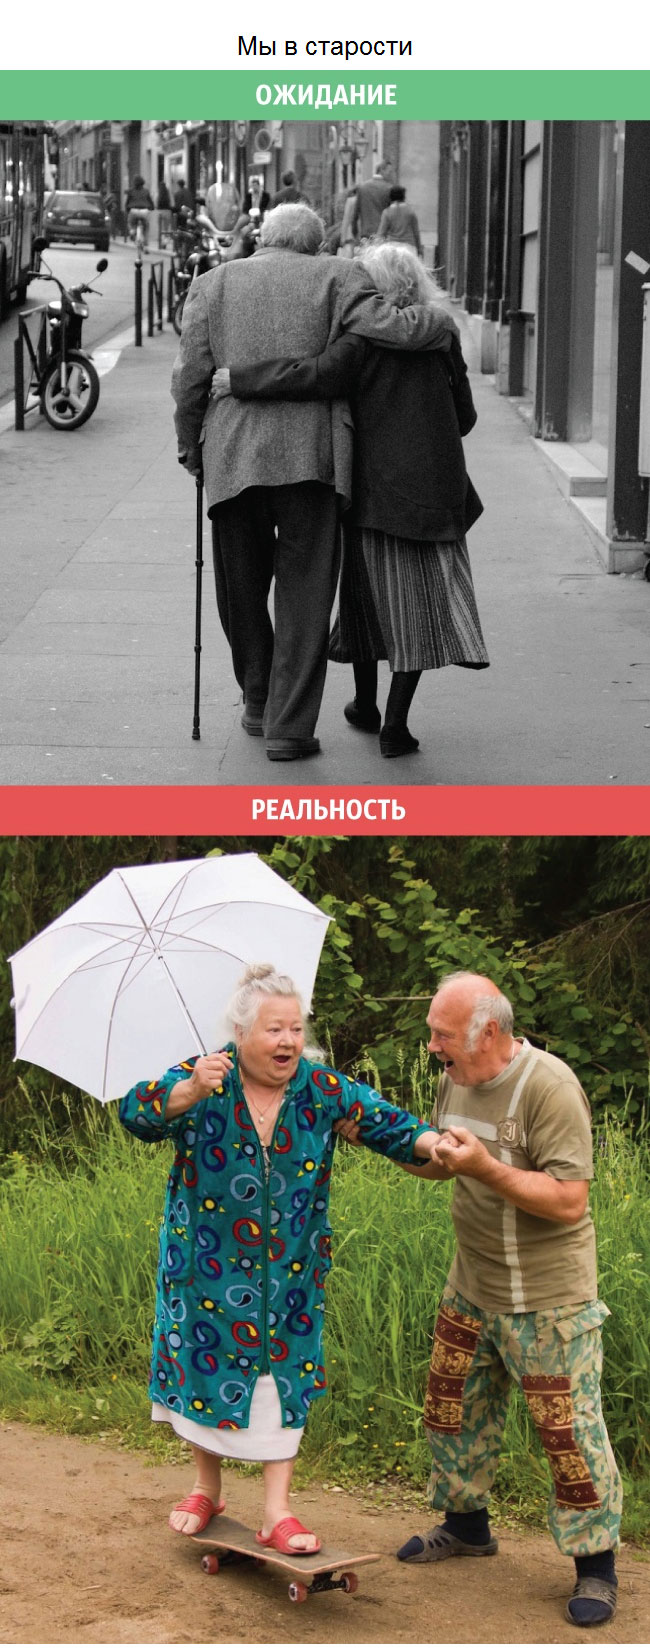 Ожидания и реальность в отношениях между мужчинами и женщинами (11 фото)